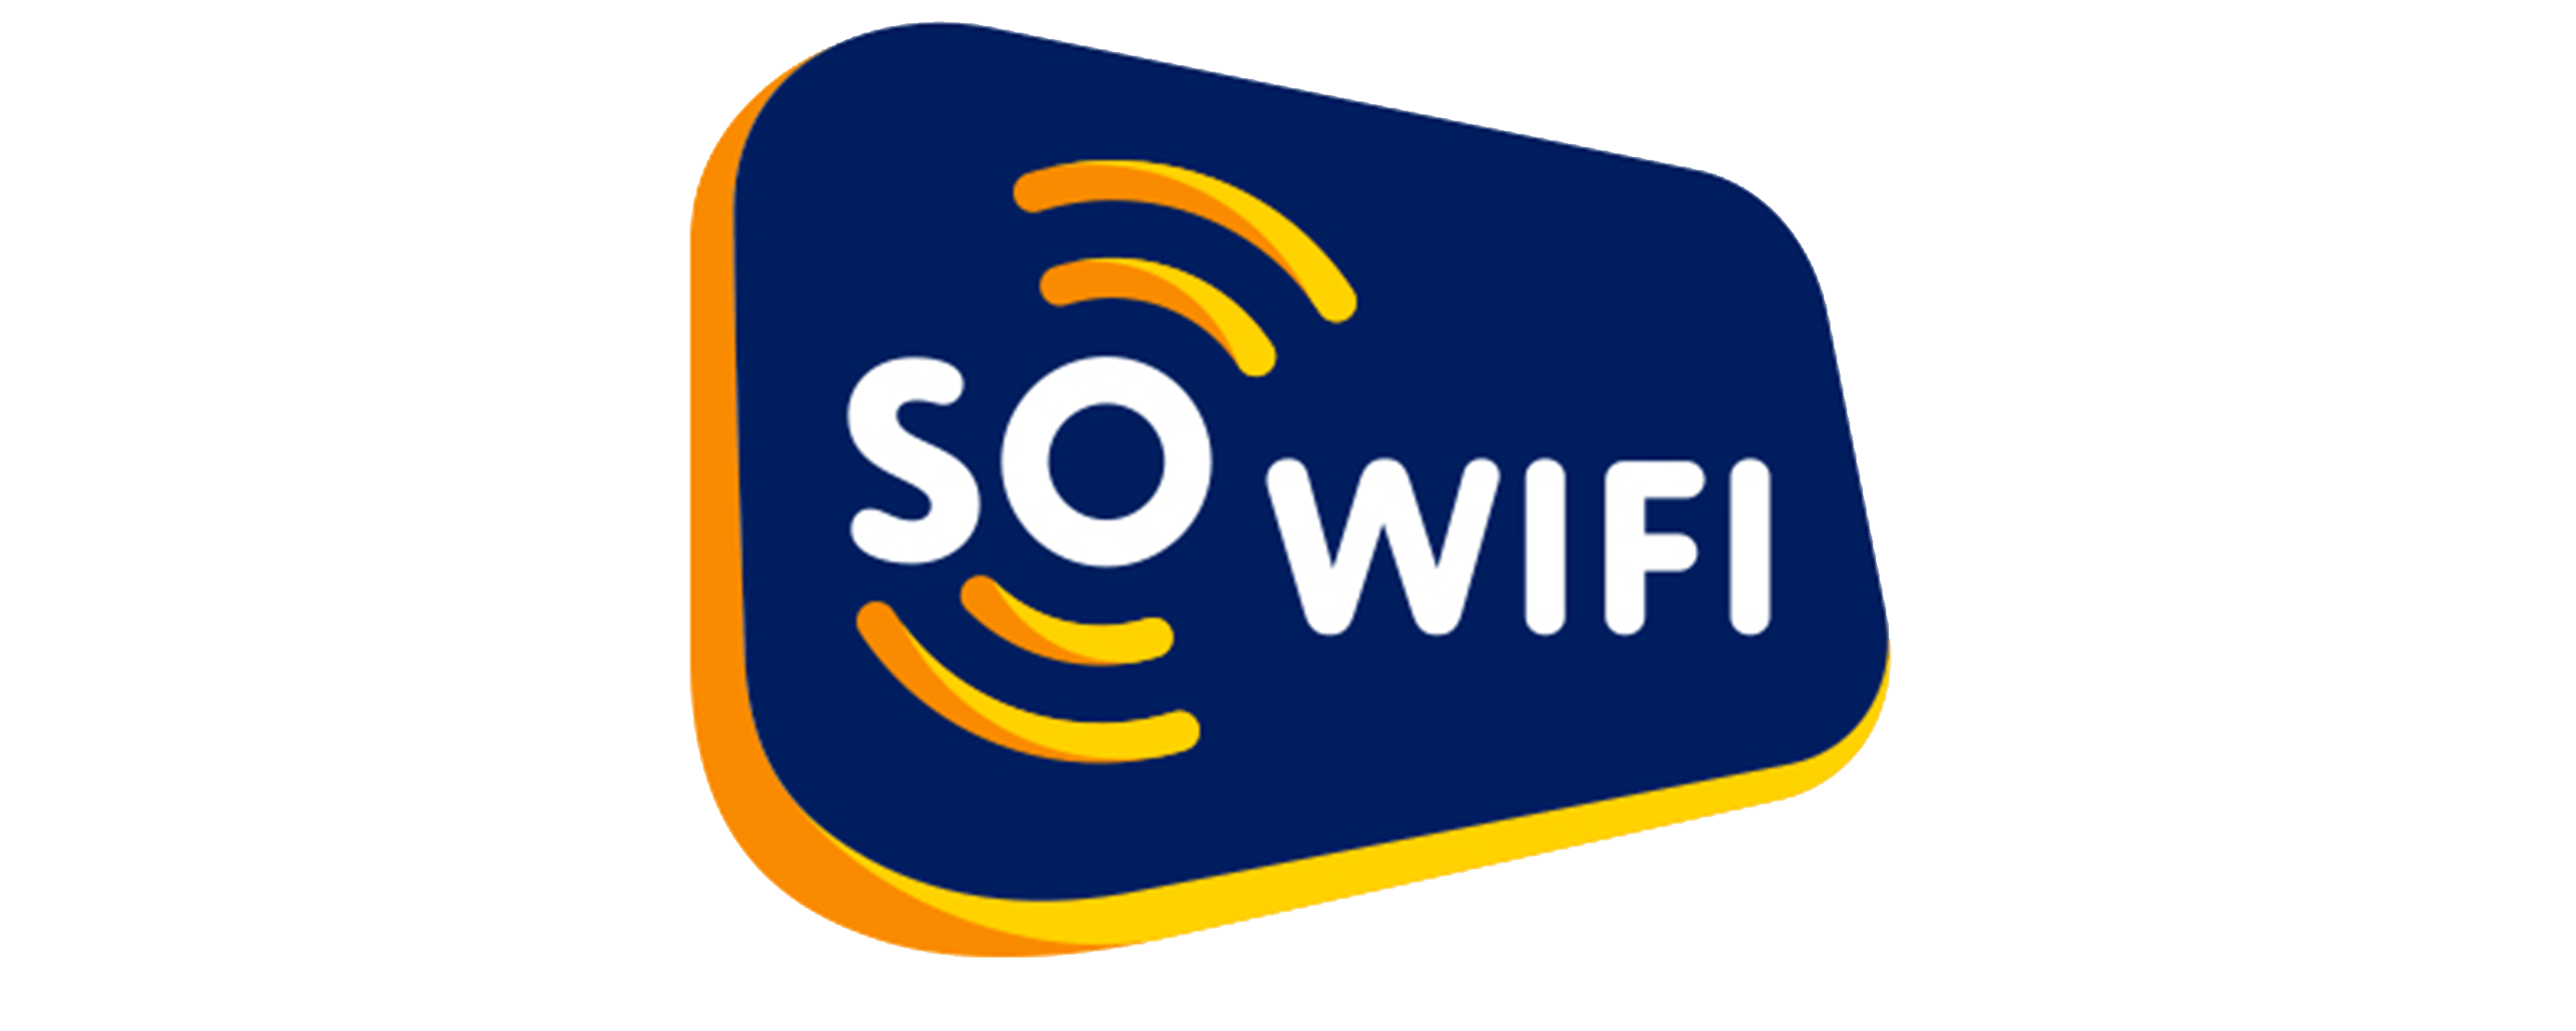 SO WIFI TelcoHQ Australia